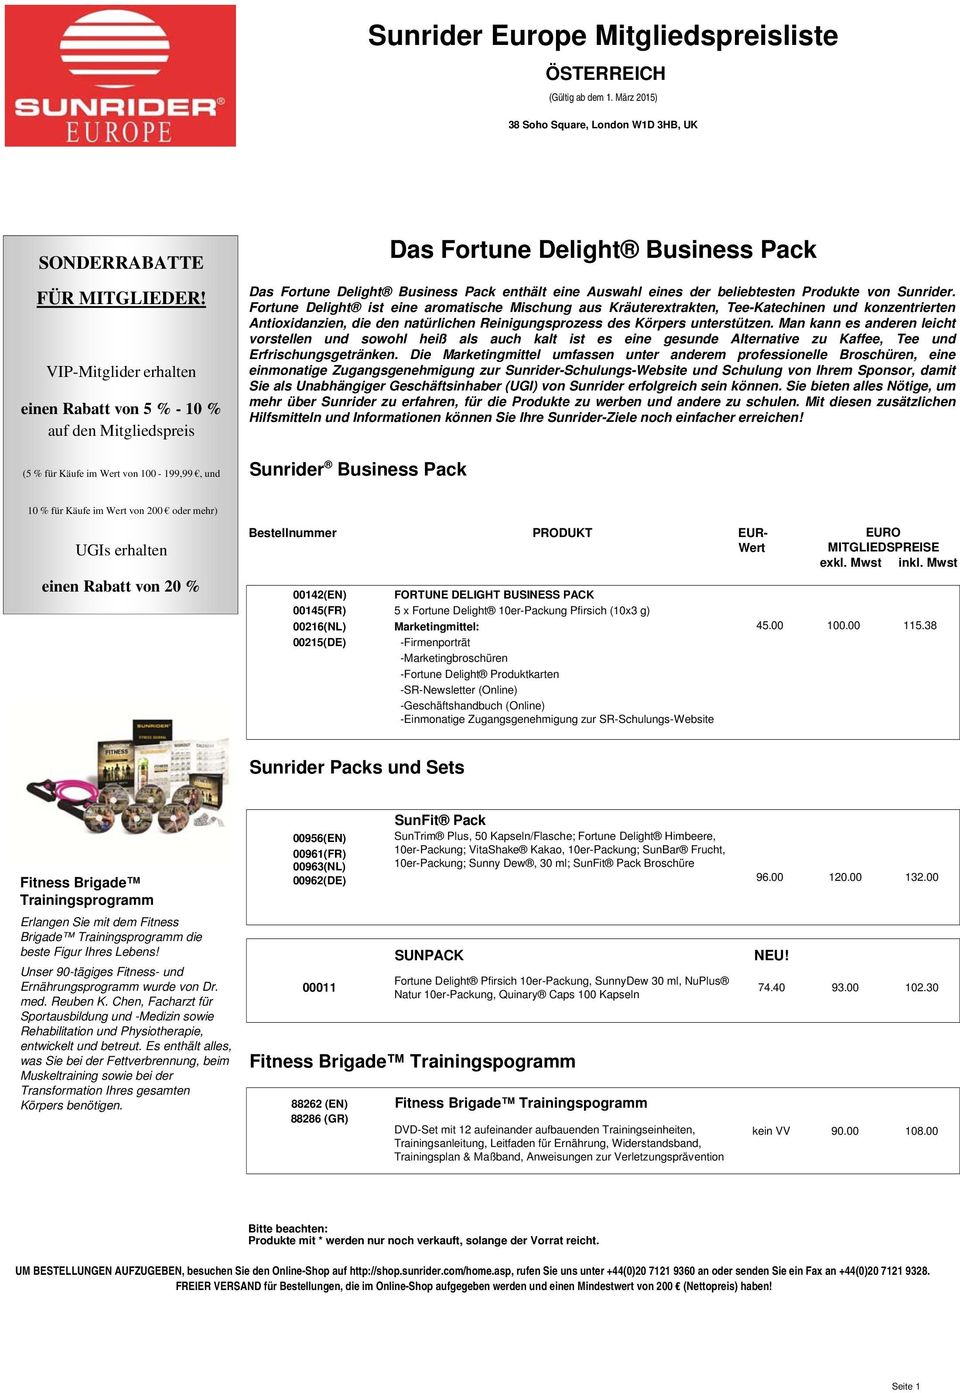 Business Pack enthält eine Auswahl eines der beliebtesten Produkte von Sunrider.